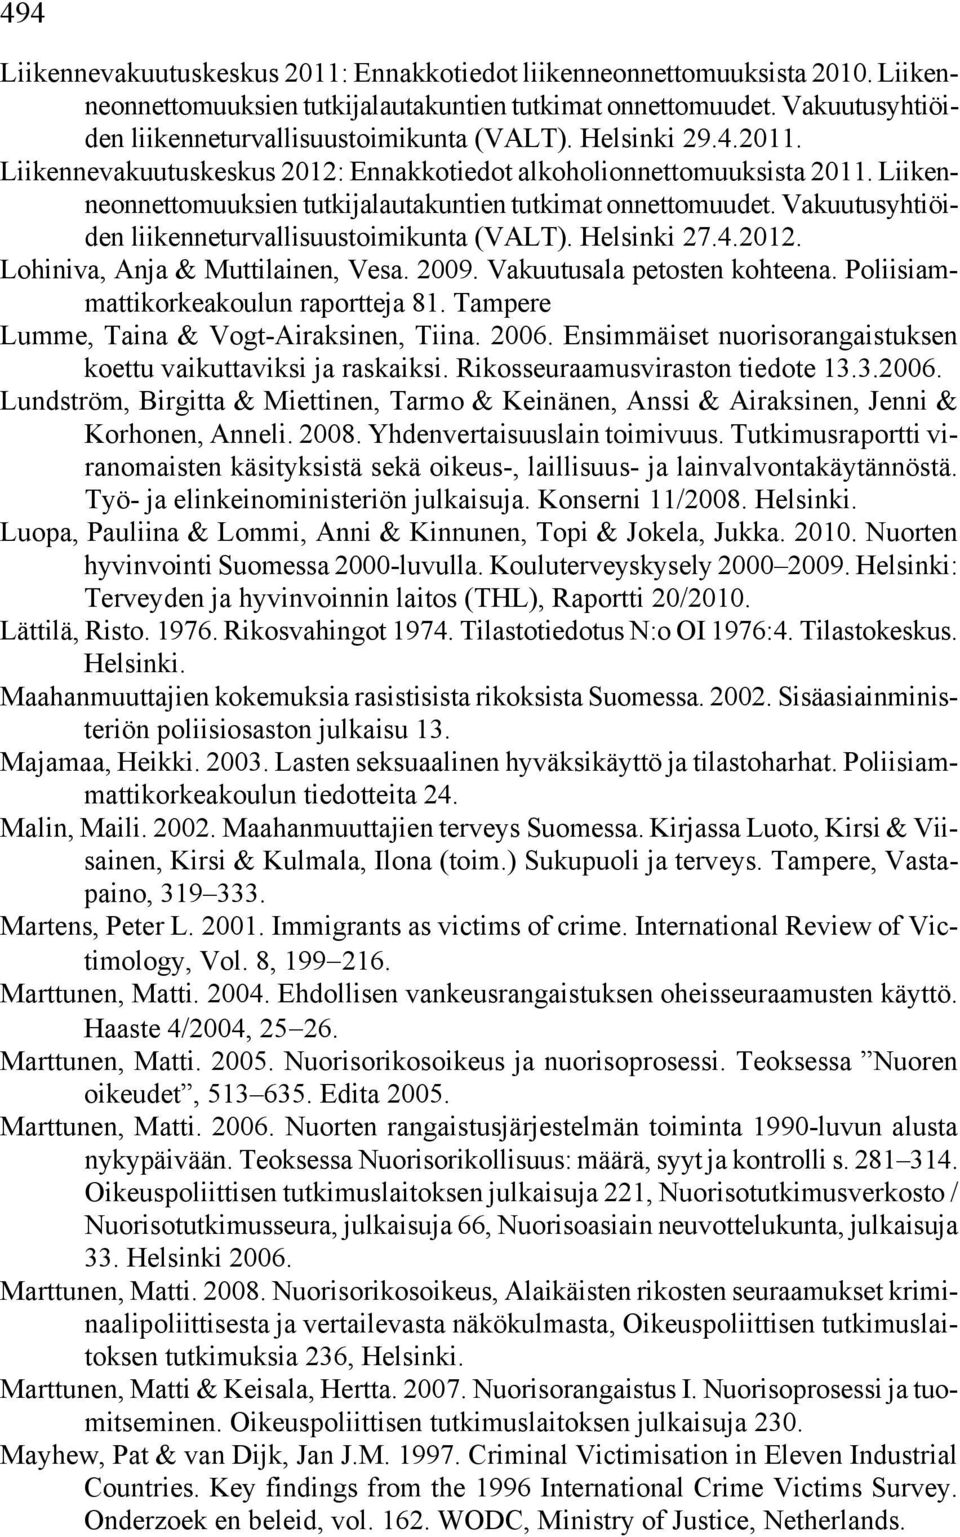 Liikenneonnettomuuksien tutkijalautakuntien tutkimat onnettomuudet. Vakuutusyhtiöiden liikenneturvallisuustoimikunta (VALT). Helsinki 27.4.2012. Lohiniva, Anja & Muttilainen, Vesa. 2009.